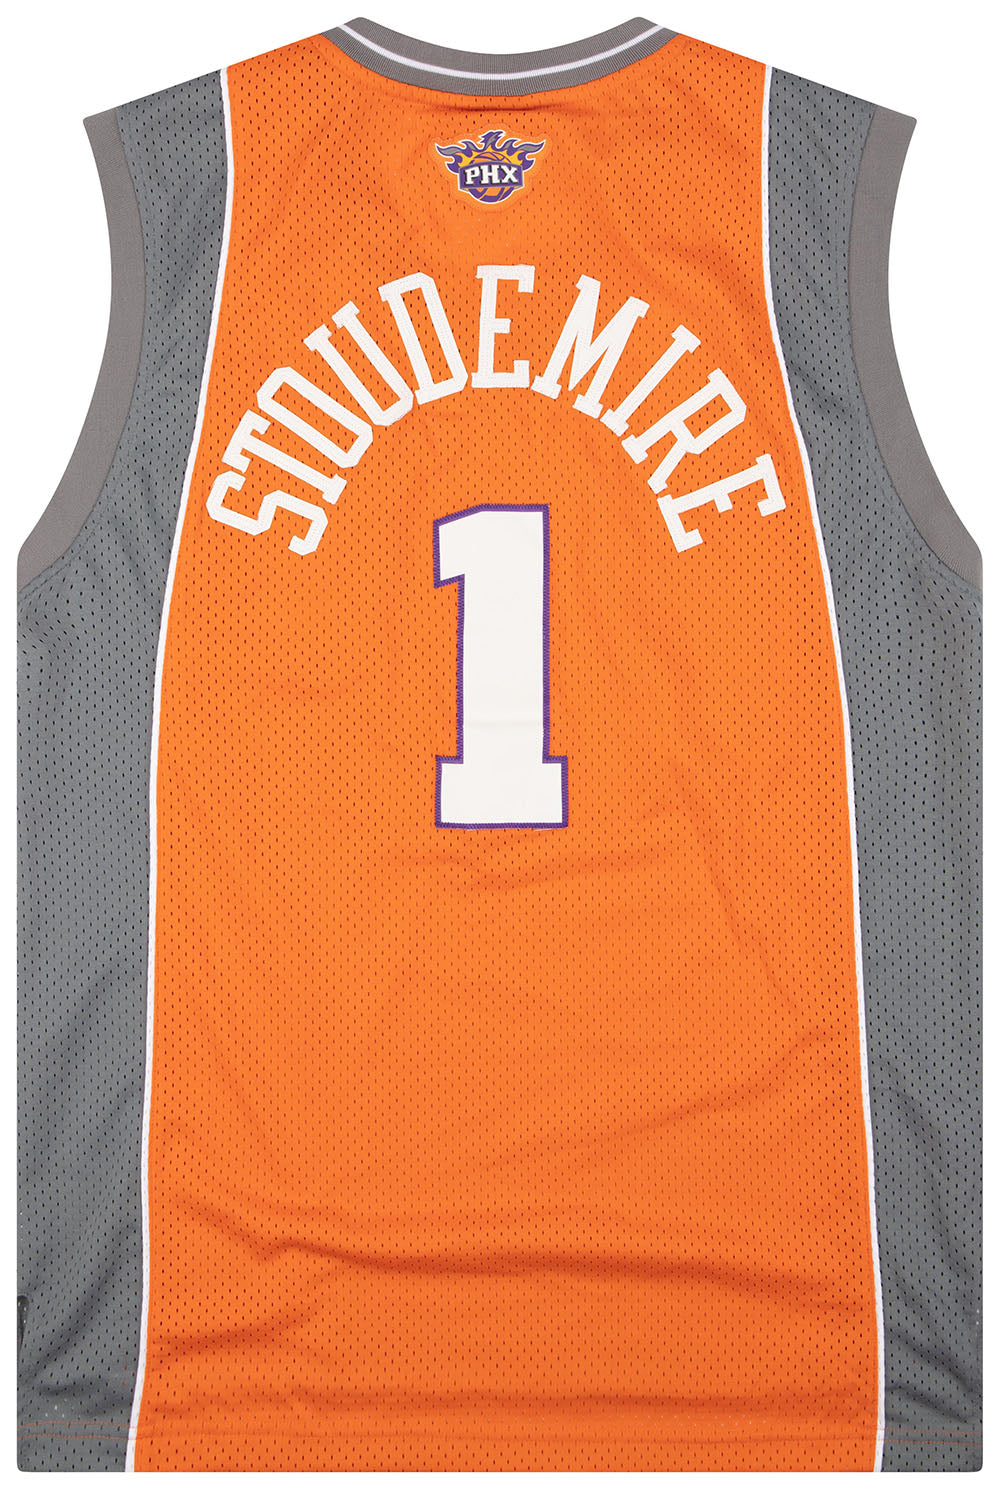 Adidas NBA Basketball Phoenix Suns Amare Stoudemire Sewn Swingman Jersey  Sz. M